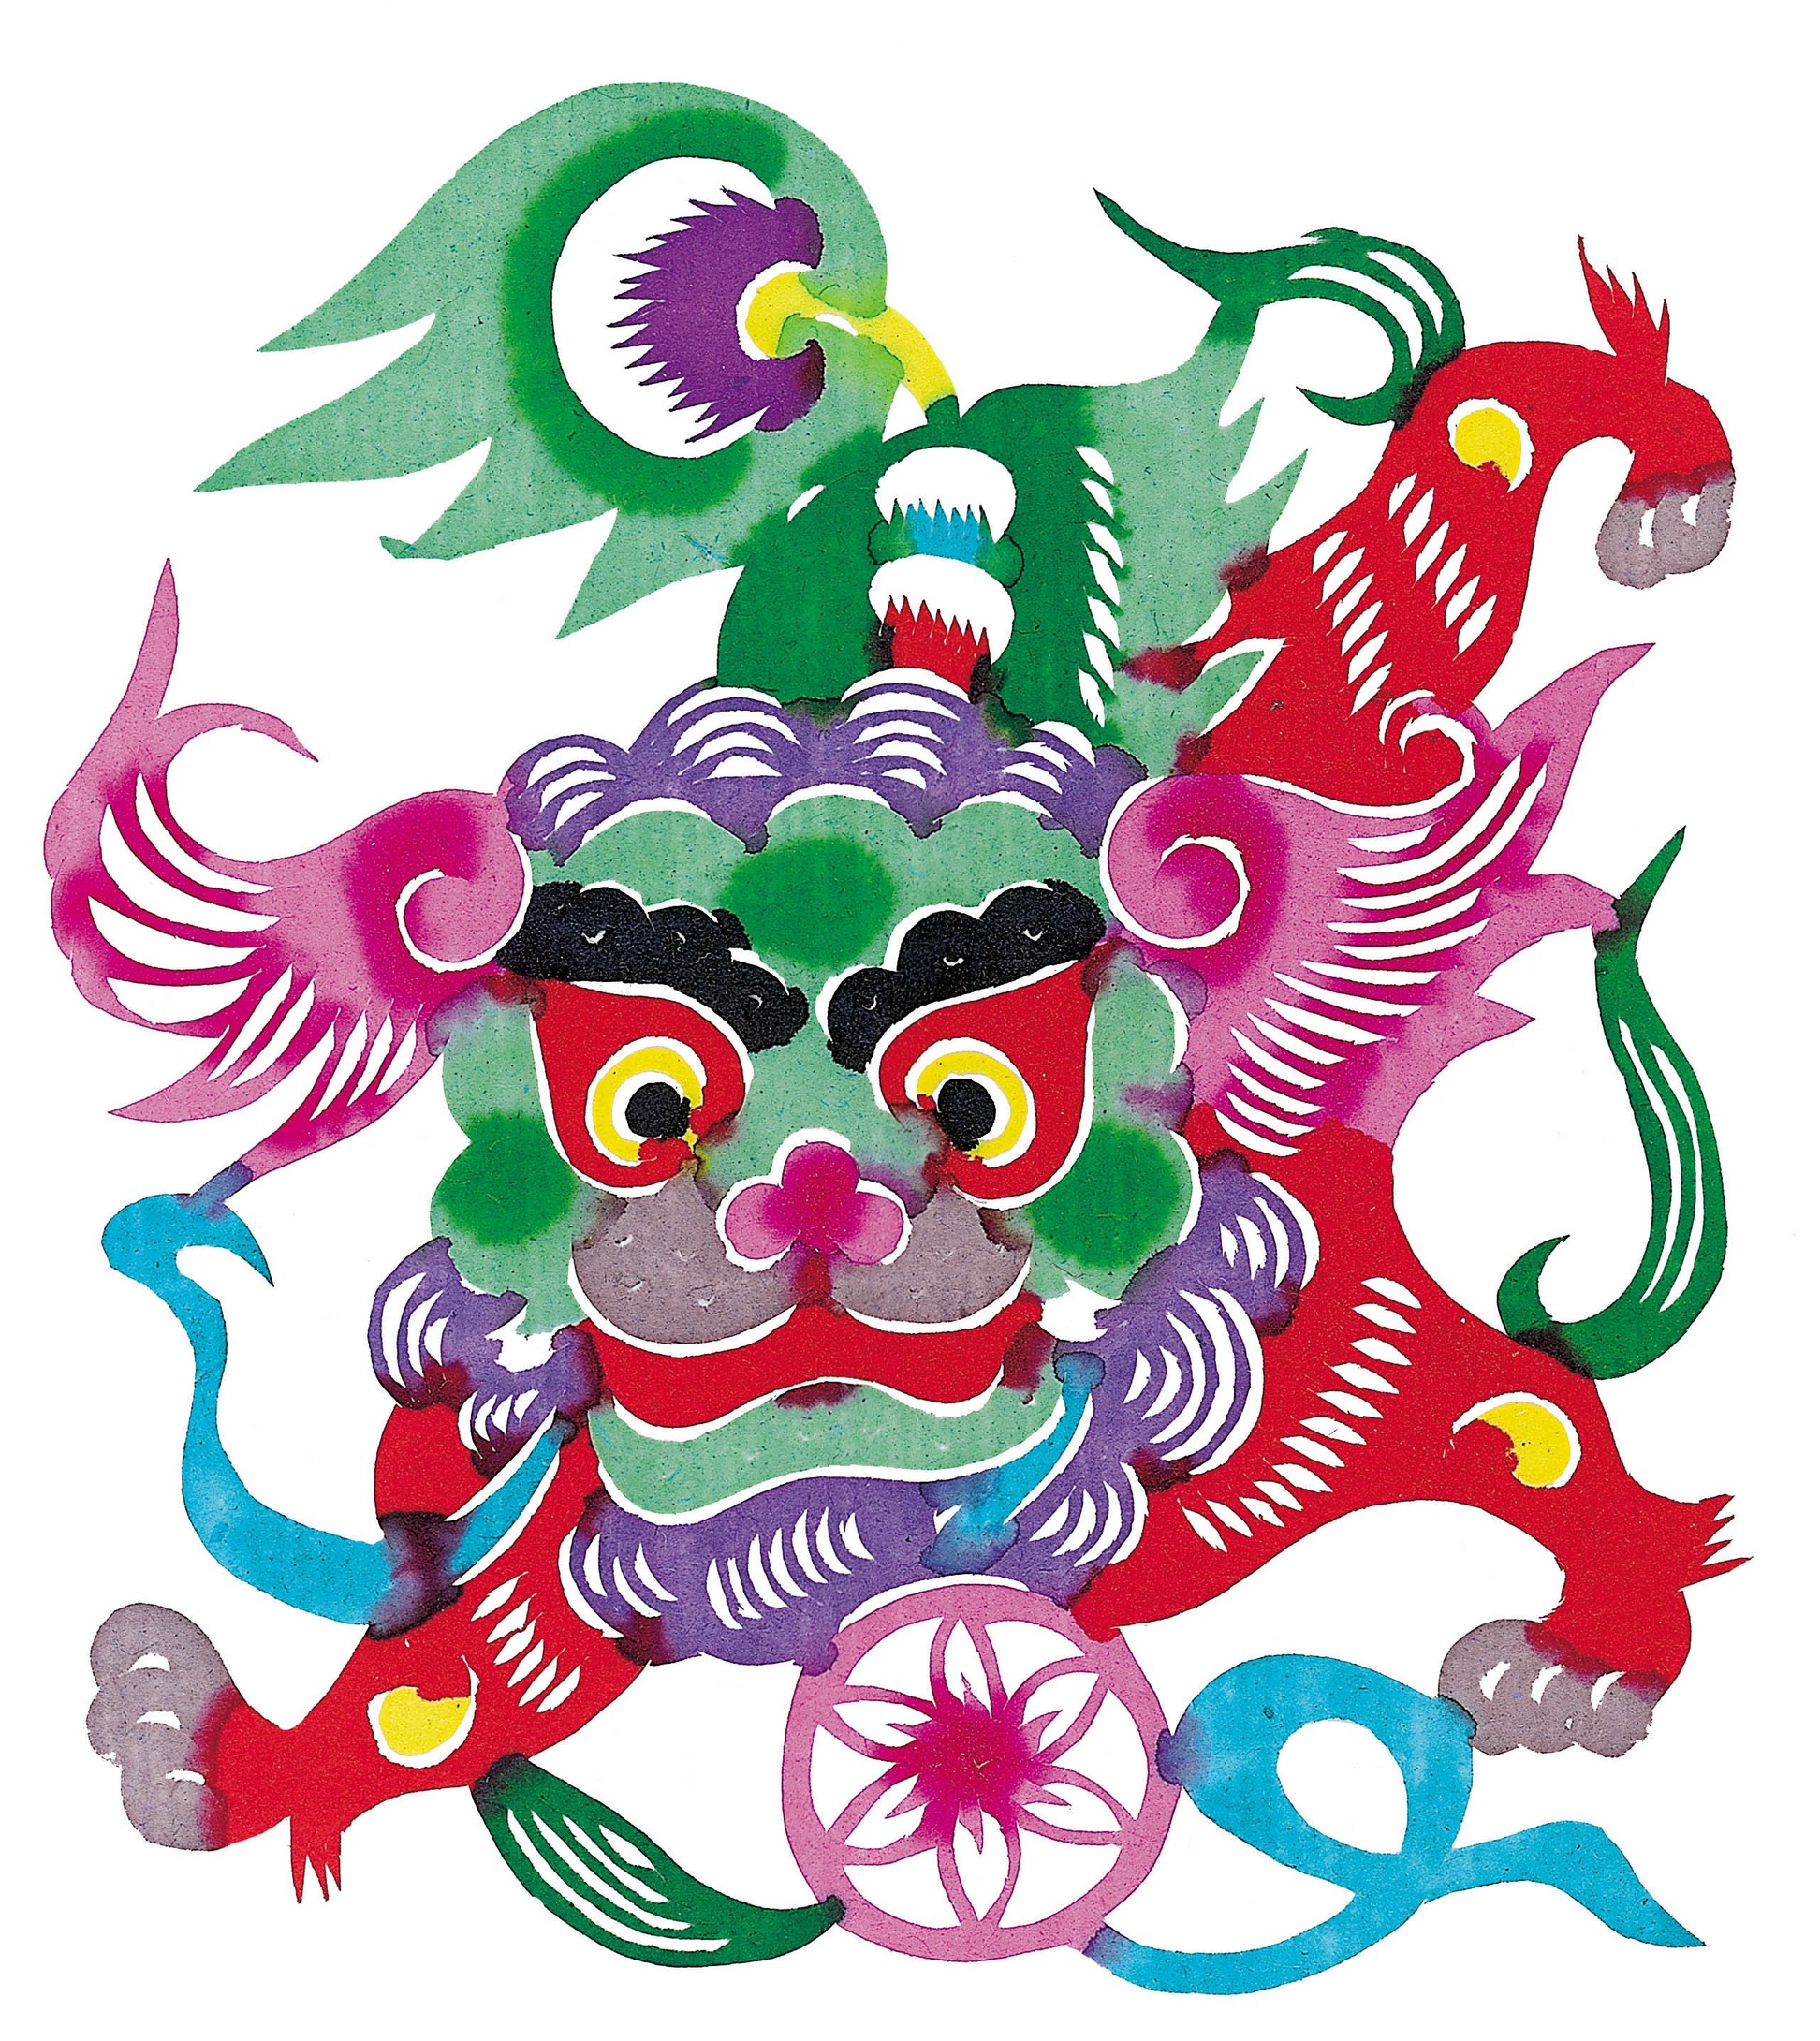 中国古代十大吉祥图图片